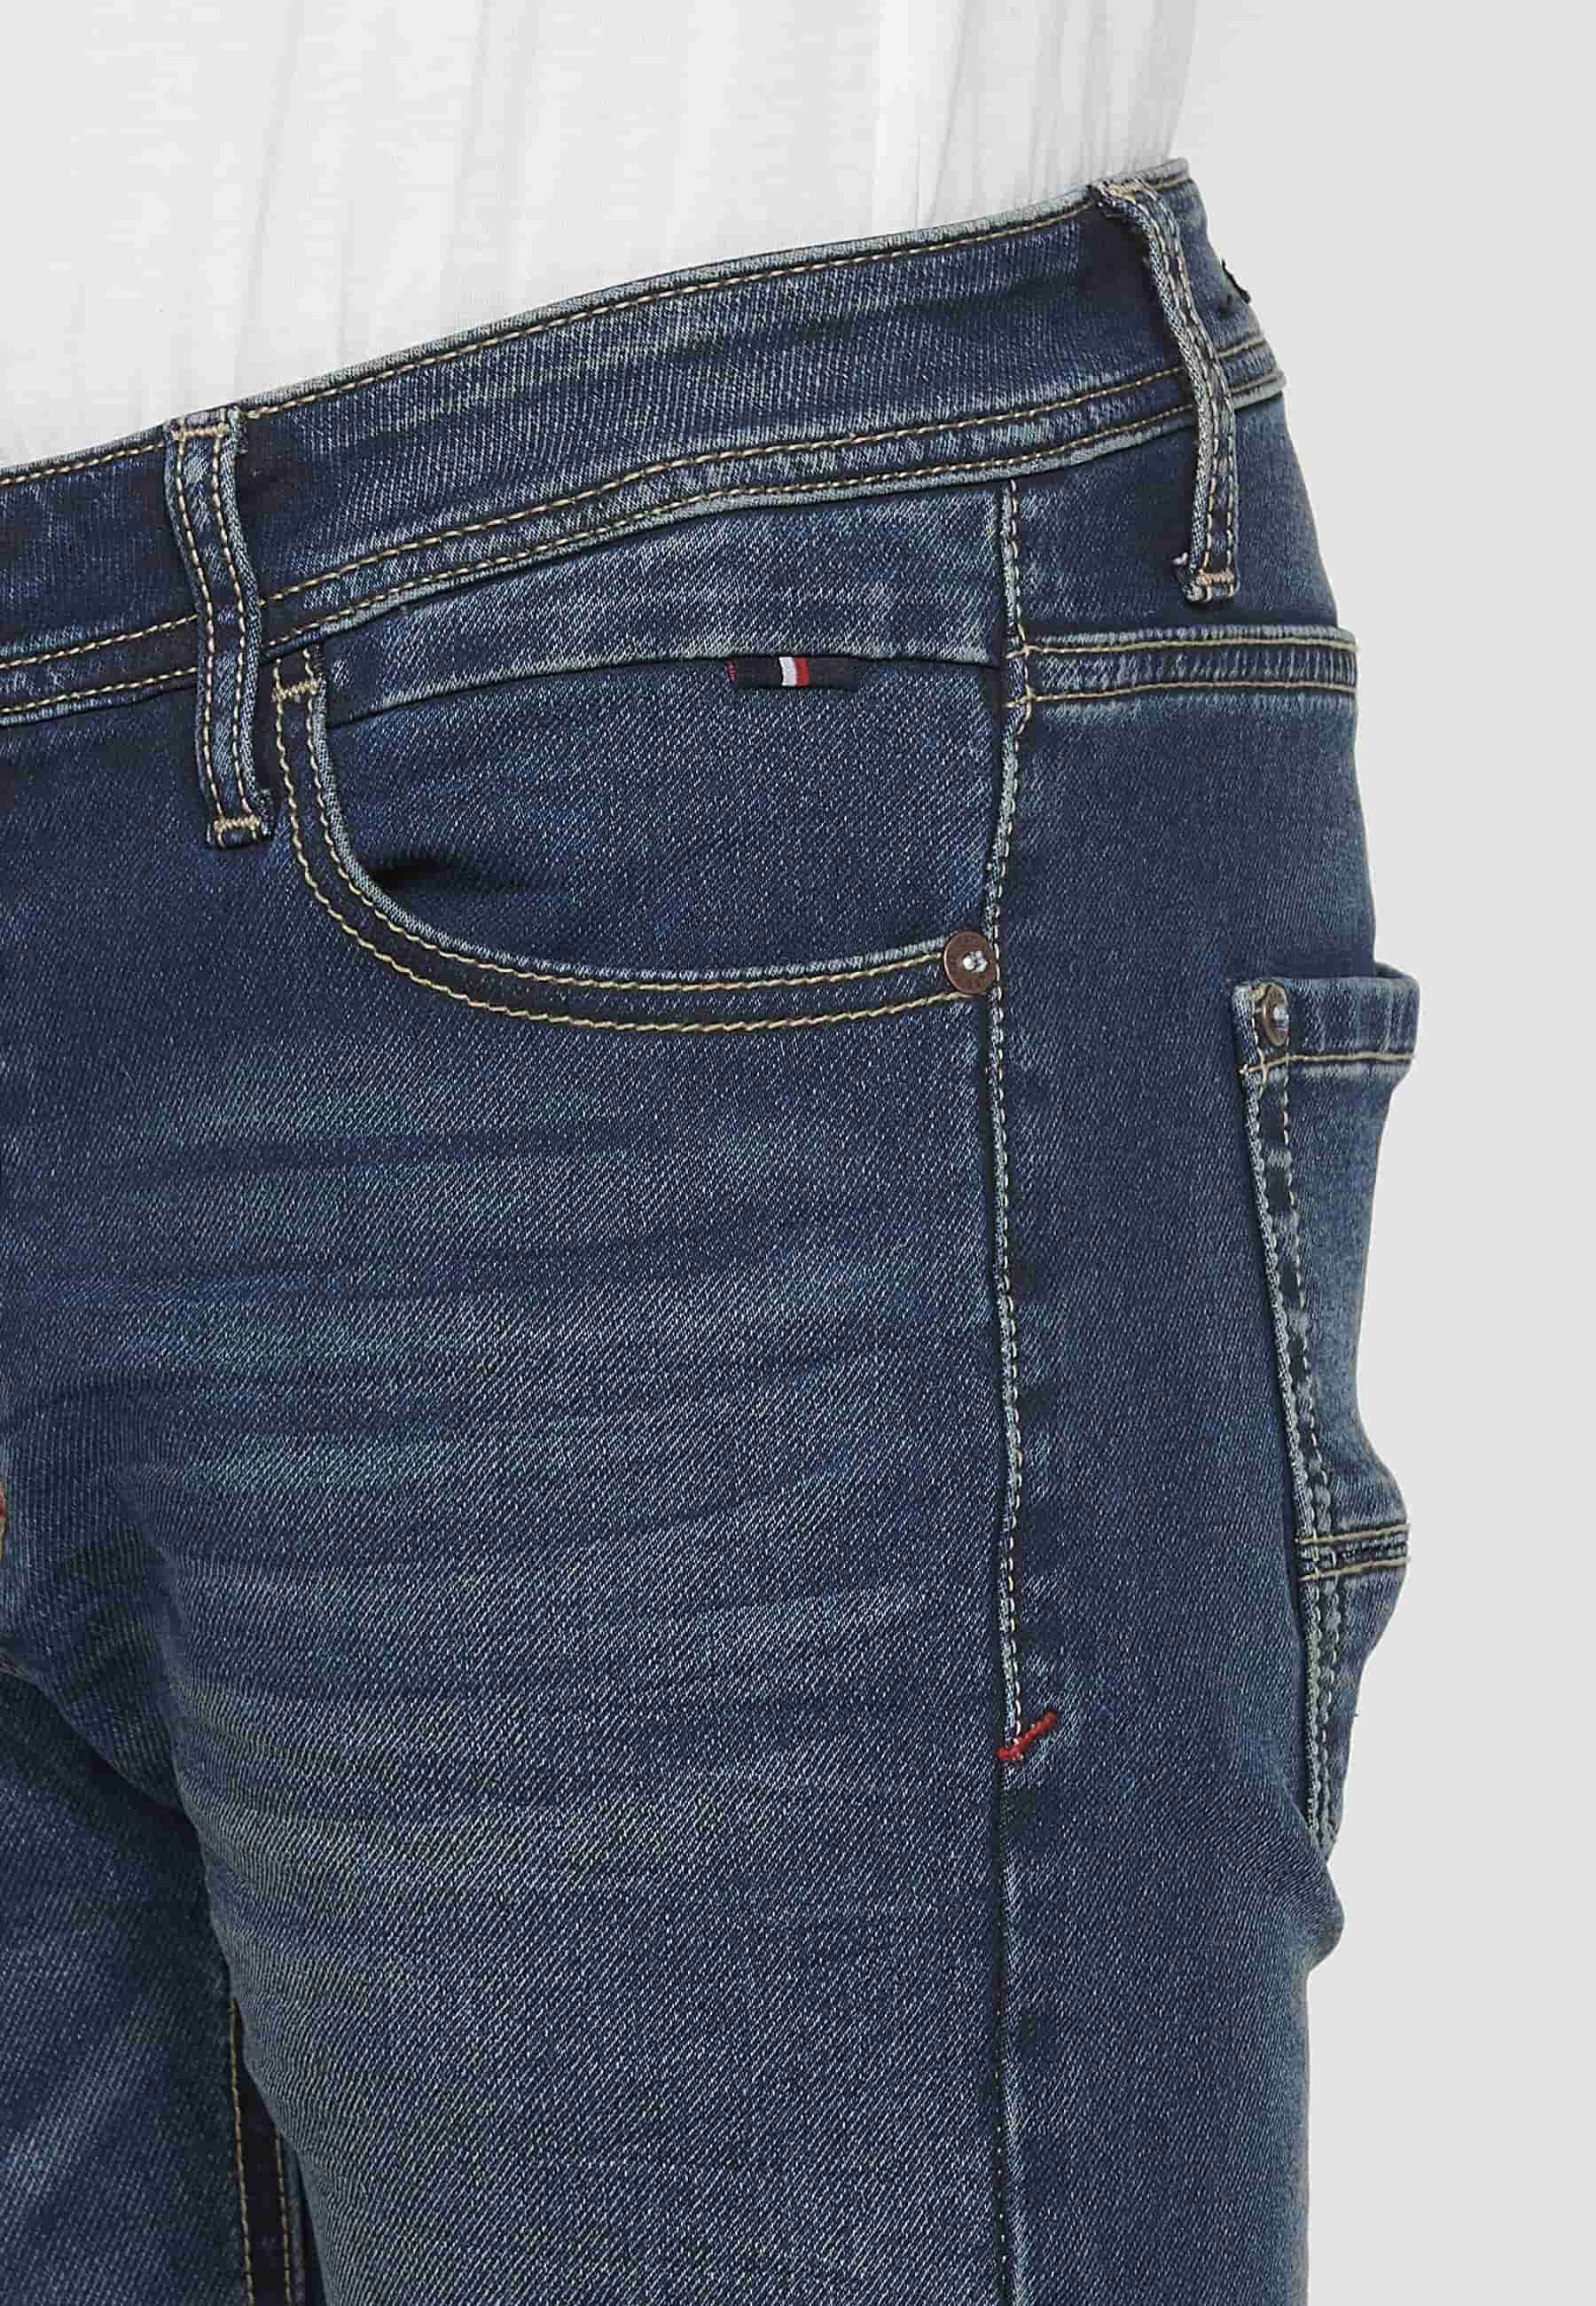 Pantalons llargs Jeans slim fit amb Tancament davanter amb cremallera i botó amb Cinc butxaques, un ceriller de Color Blau per a Home 9